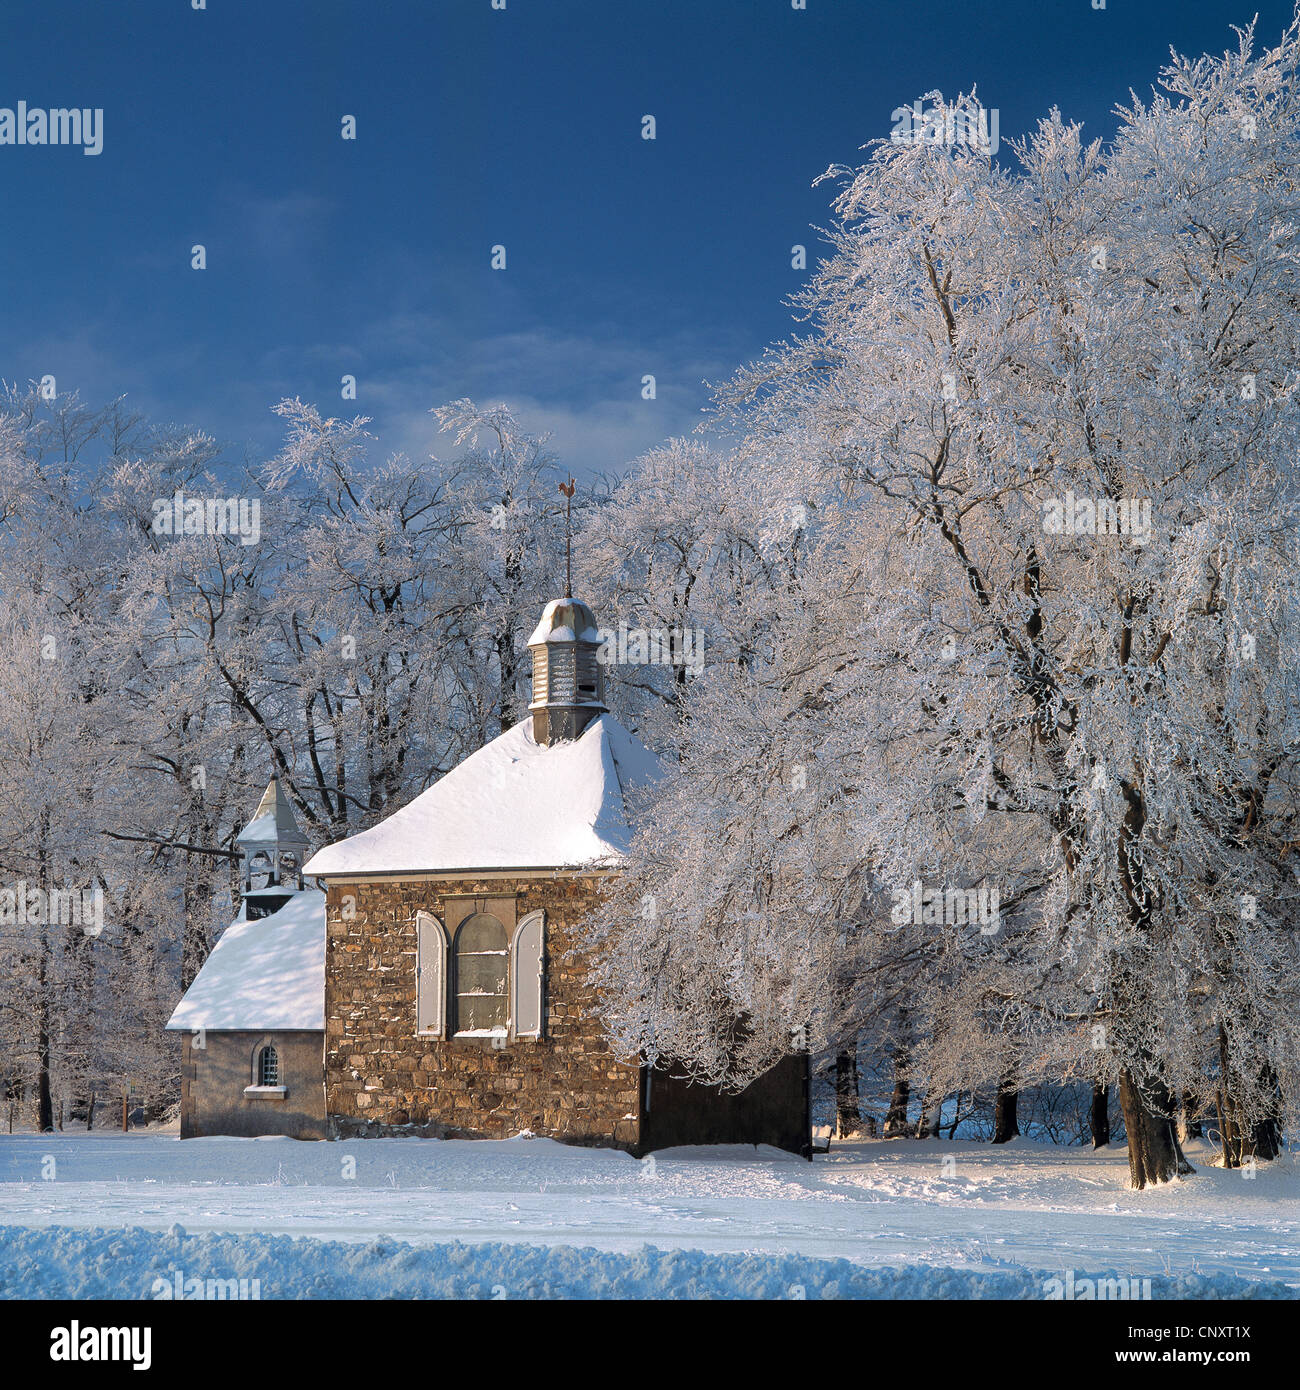 Chapelle Fischbach et les arbres recouverts de neige en hiver à Baraque Michel, Hautes Fagnes / Hautes Fagnes, Ardennes Belges, Belgique Banque D'Images